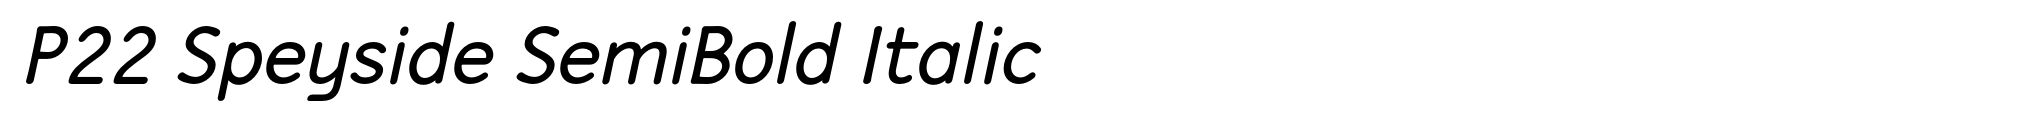 P22 Speyside SemiBold Italic image